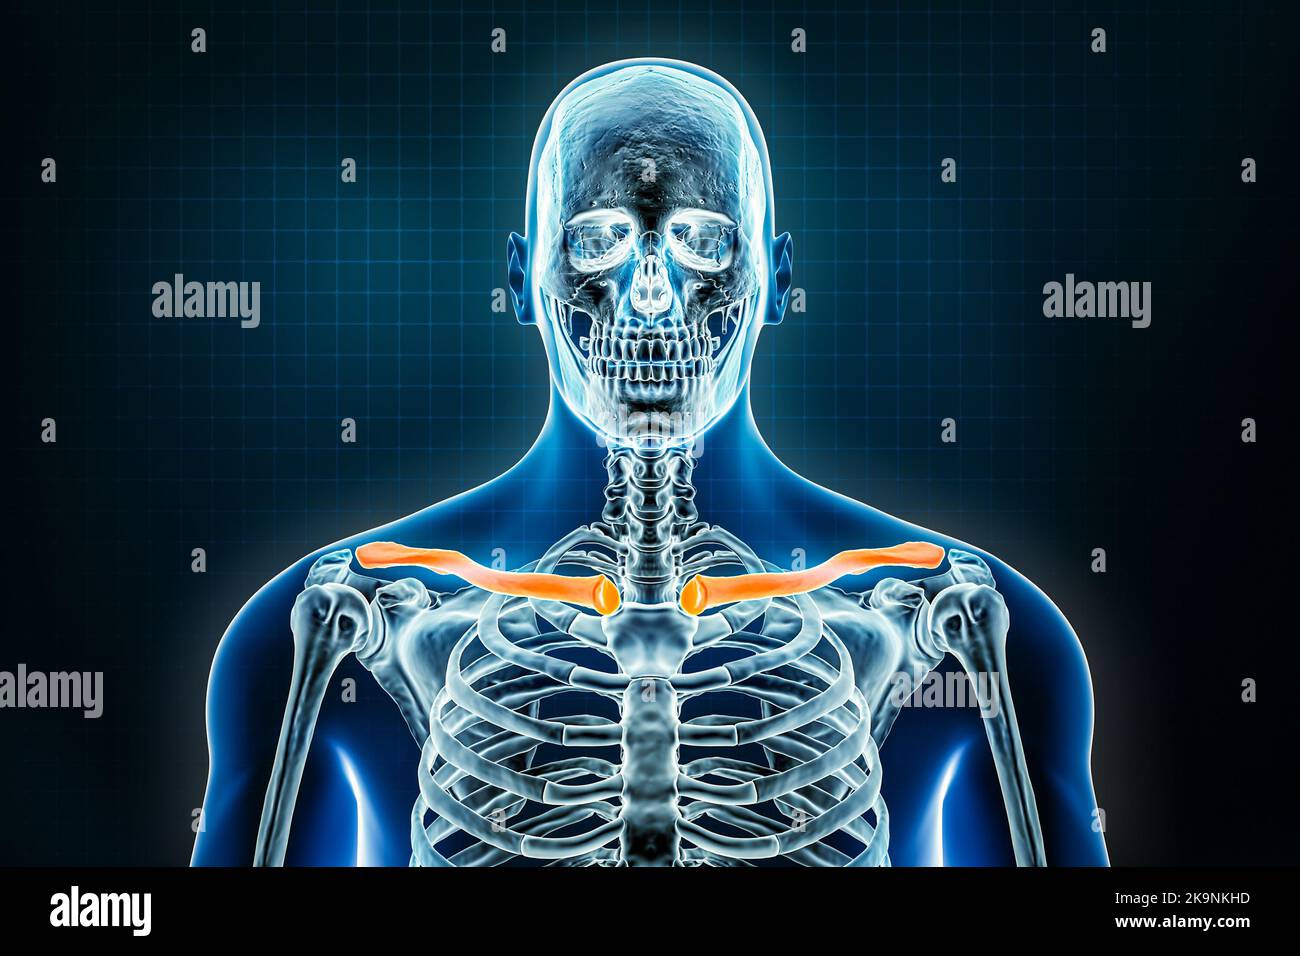 Röntgenaufnahme des Schlüsselbeins oder Halsbeins vorne oder anteriorer Ansicht. Osteologie des menschlichen Skeletts, Knochen der oberen Extremitäten 3D Darstellung. Anatomie, Medizin, s Stockfoto